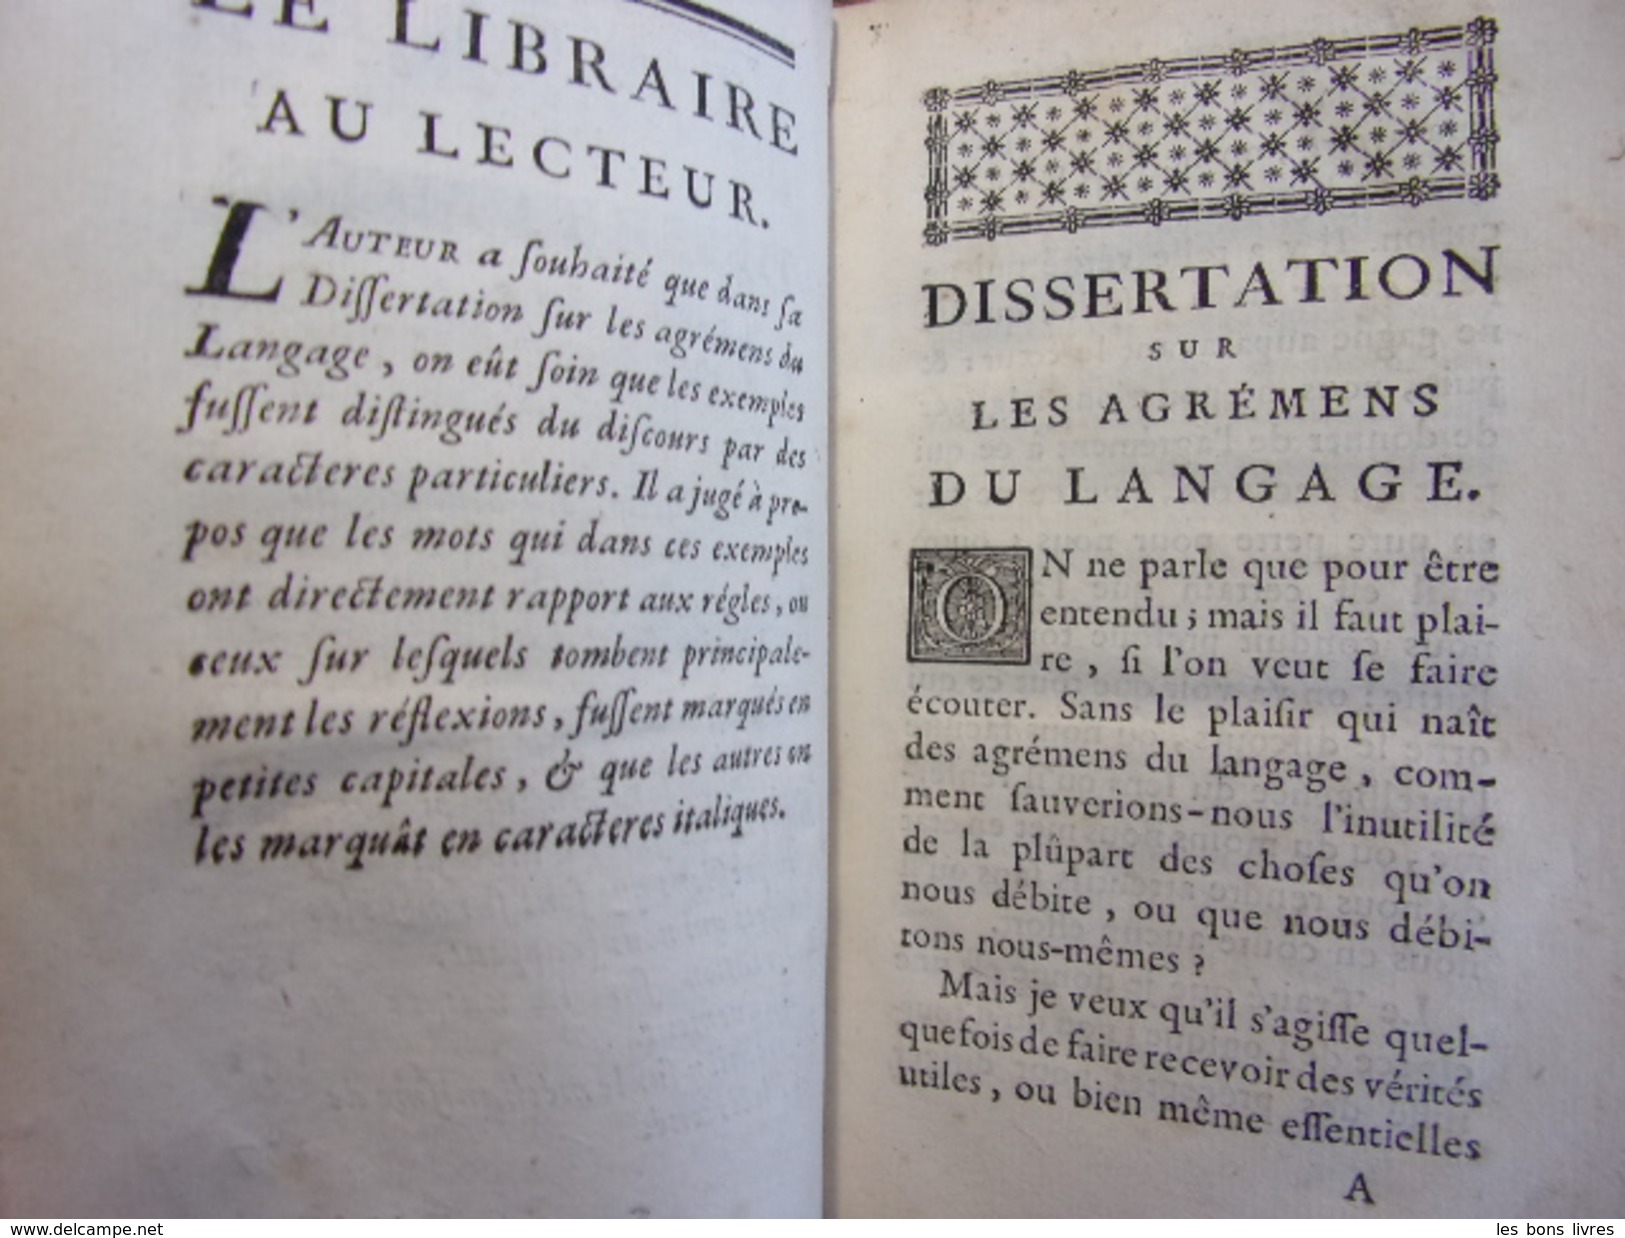 Les Agrémens Du Langage & Les Bautez Et Défauts De La Poésie M. De Gamaches, MDCCXLIX - Jusque 1700